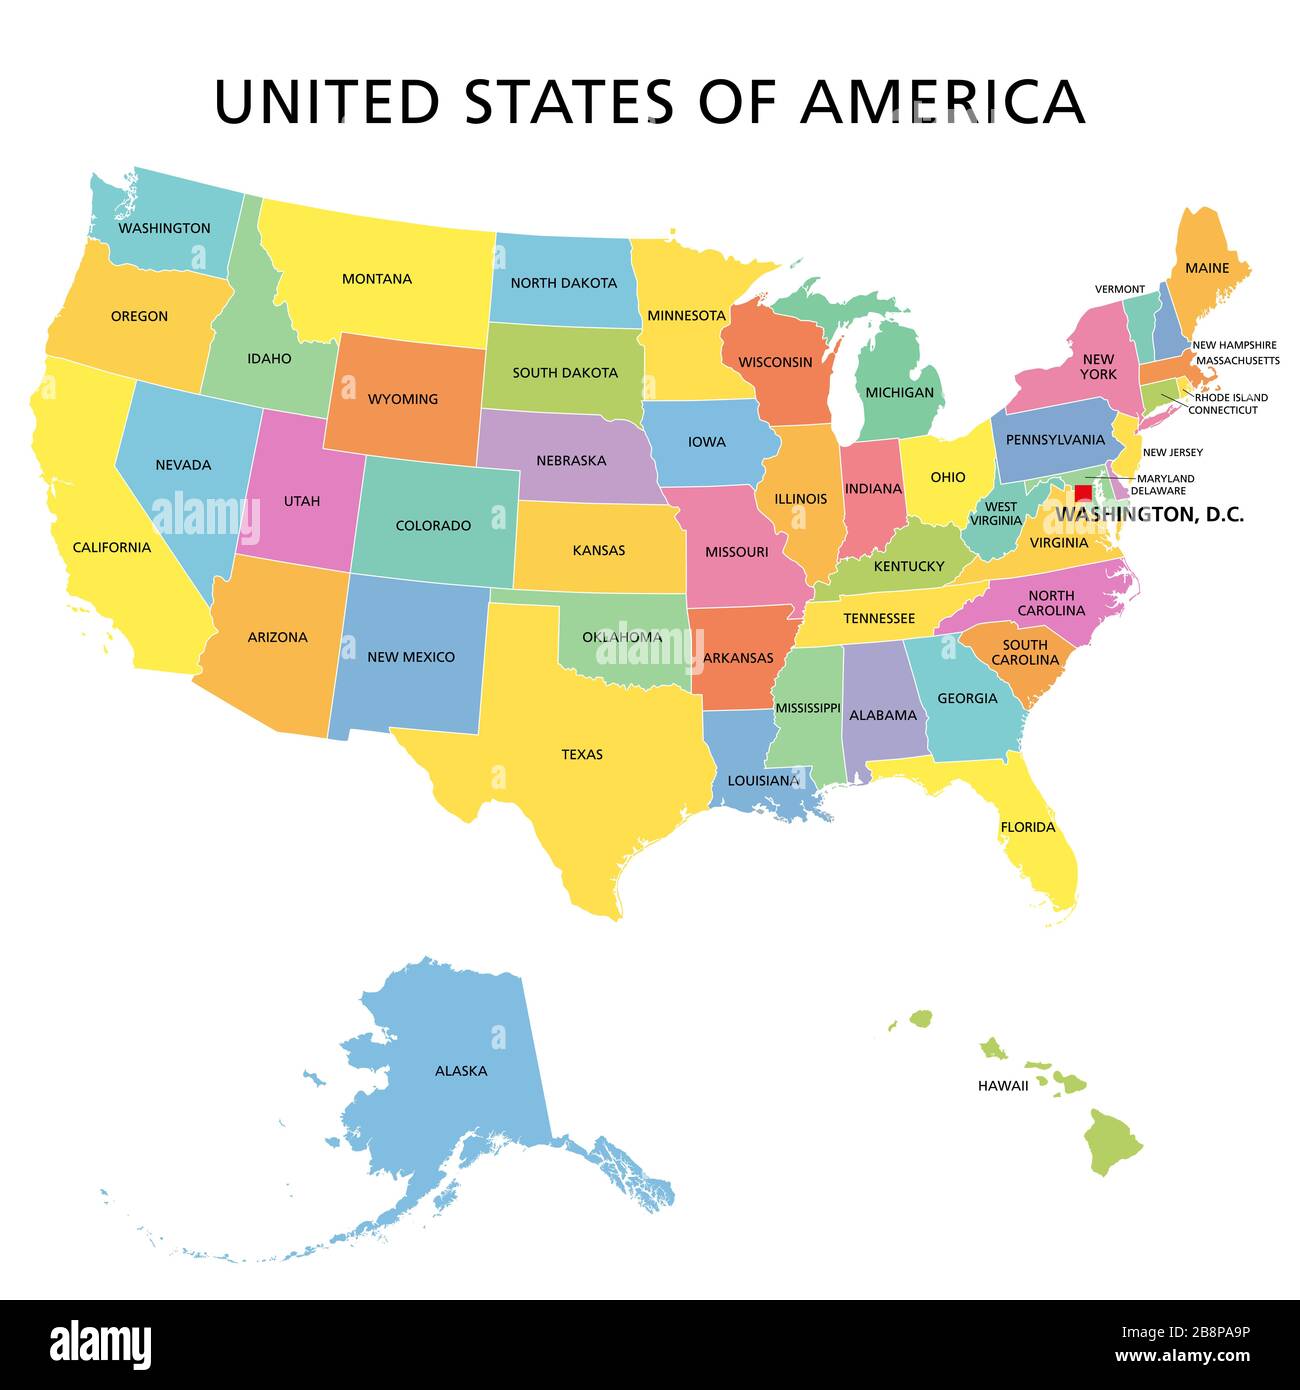 États-Unis d'Amérique, carte politique multicolore. 50 états ayant leur propre territoire géographique, entités constituantes, liés ensemble dans une union. Banque D'Images